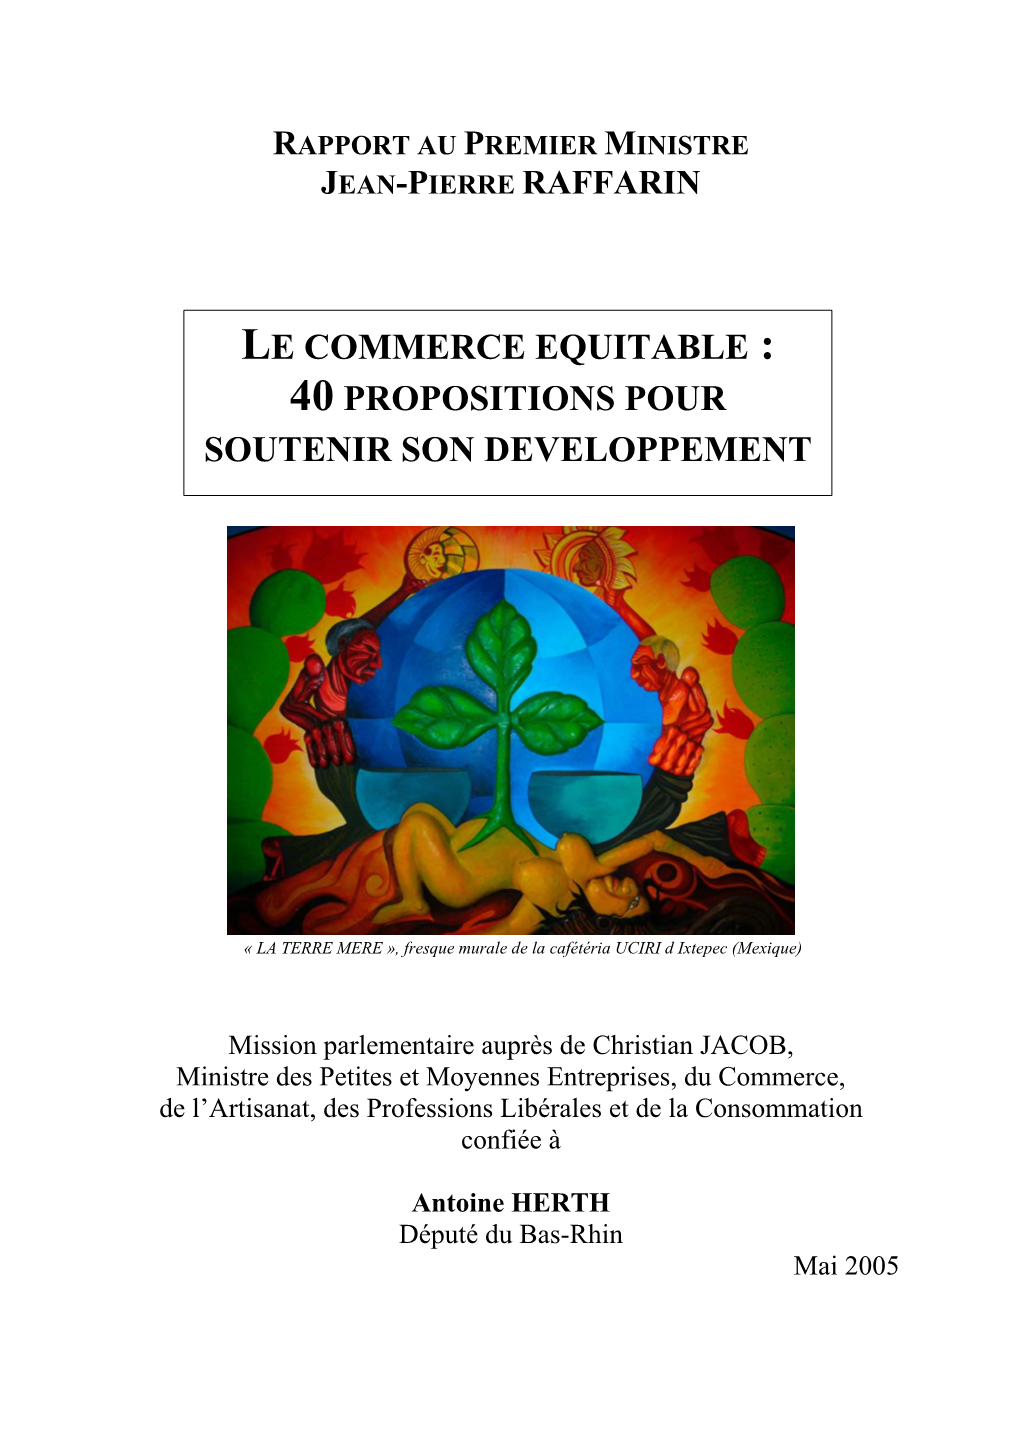 Le Commerce Equitable : 40 Propositions Pour Soutenir Son Developpement